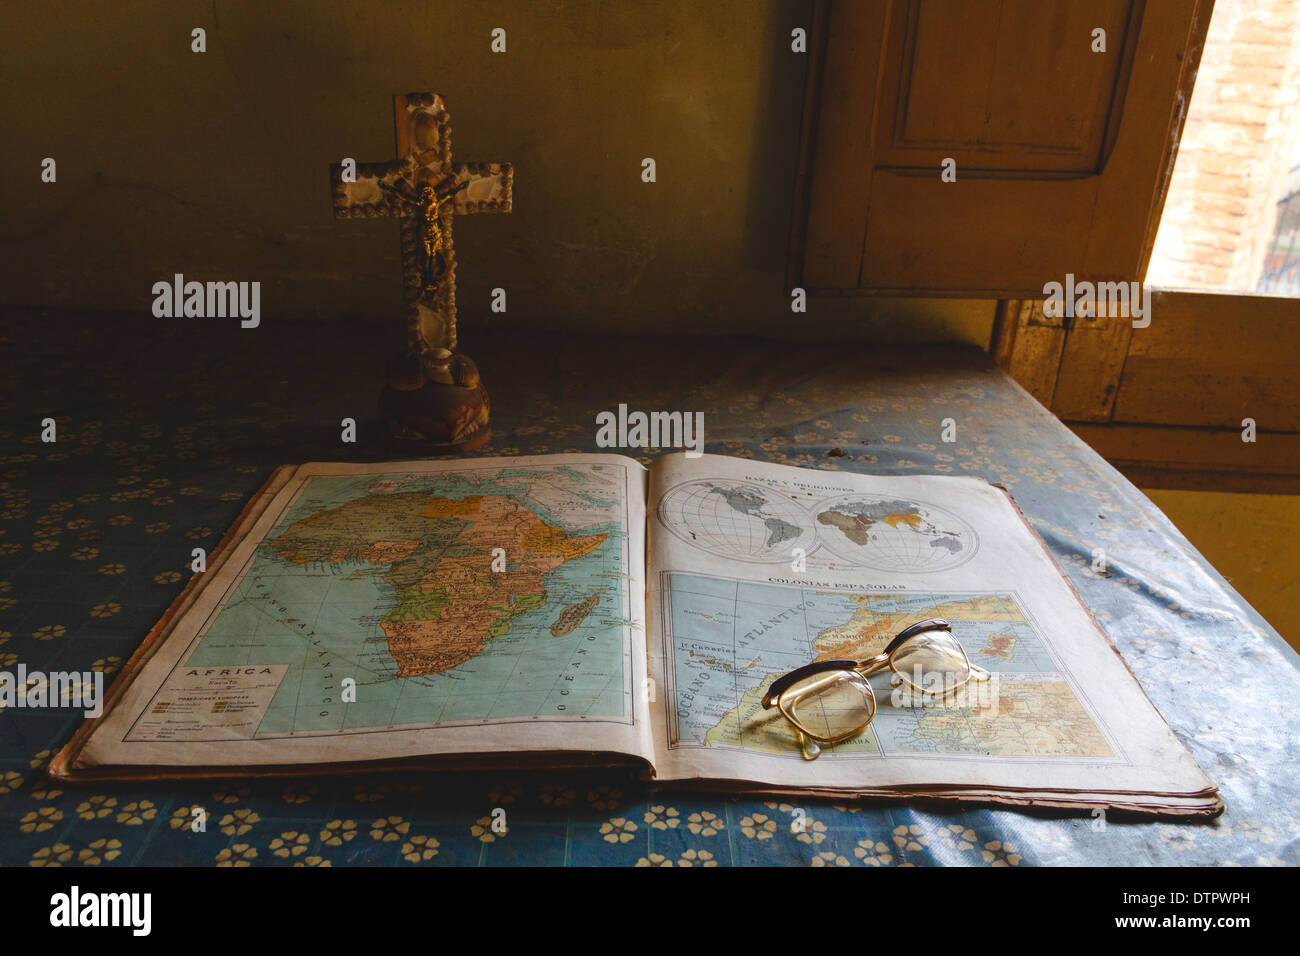 Una vecchia mappa libro è aperto e poggiato su un tavolo con la tovaglia modellato. Vi è una croce con Gesù e bicchieri. Foto Stock